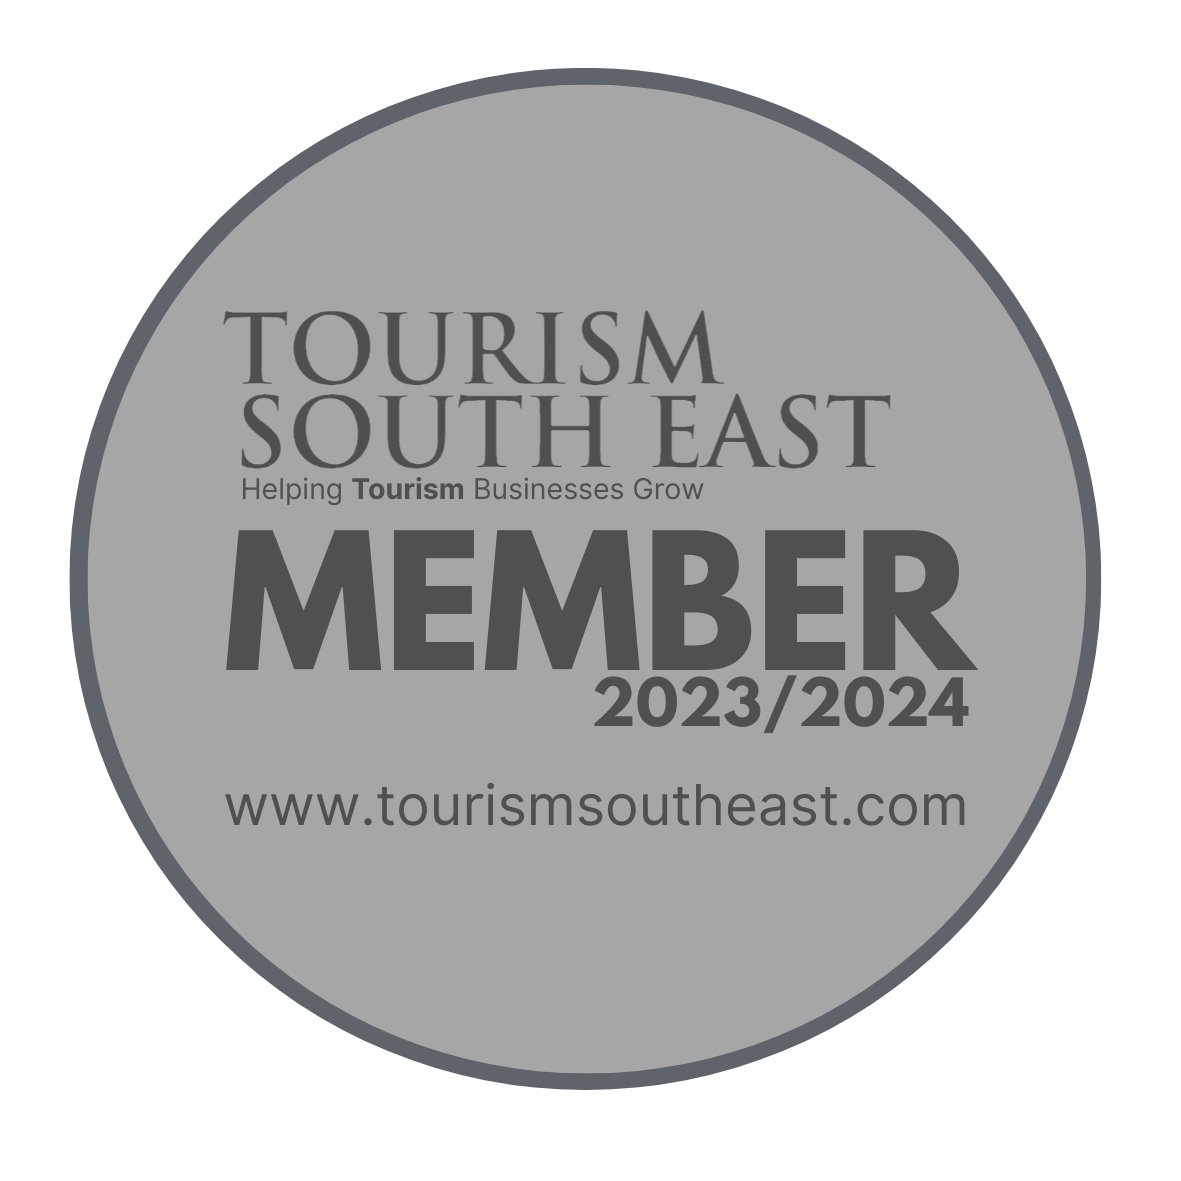 Tourism South East Member 23/24 - Platinum